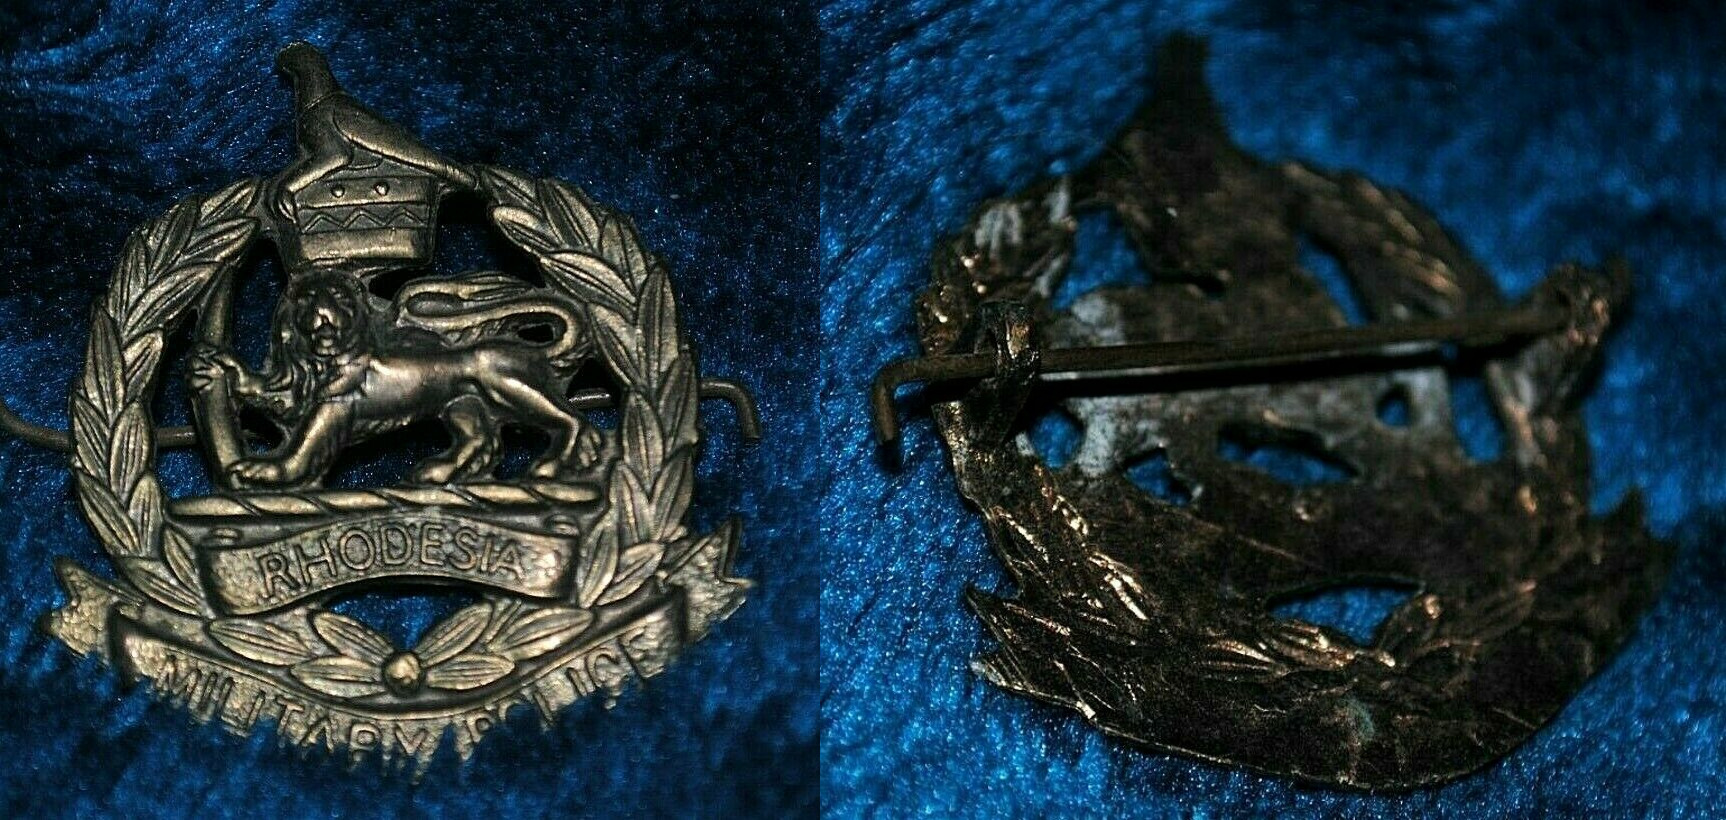 Rhodesian Military Police cap badge